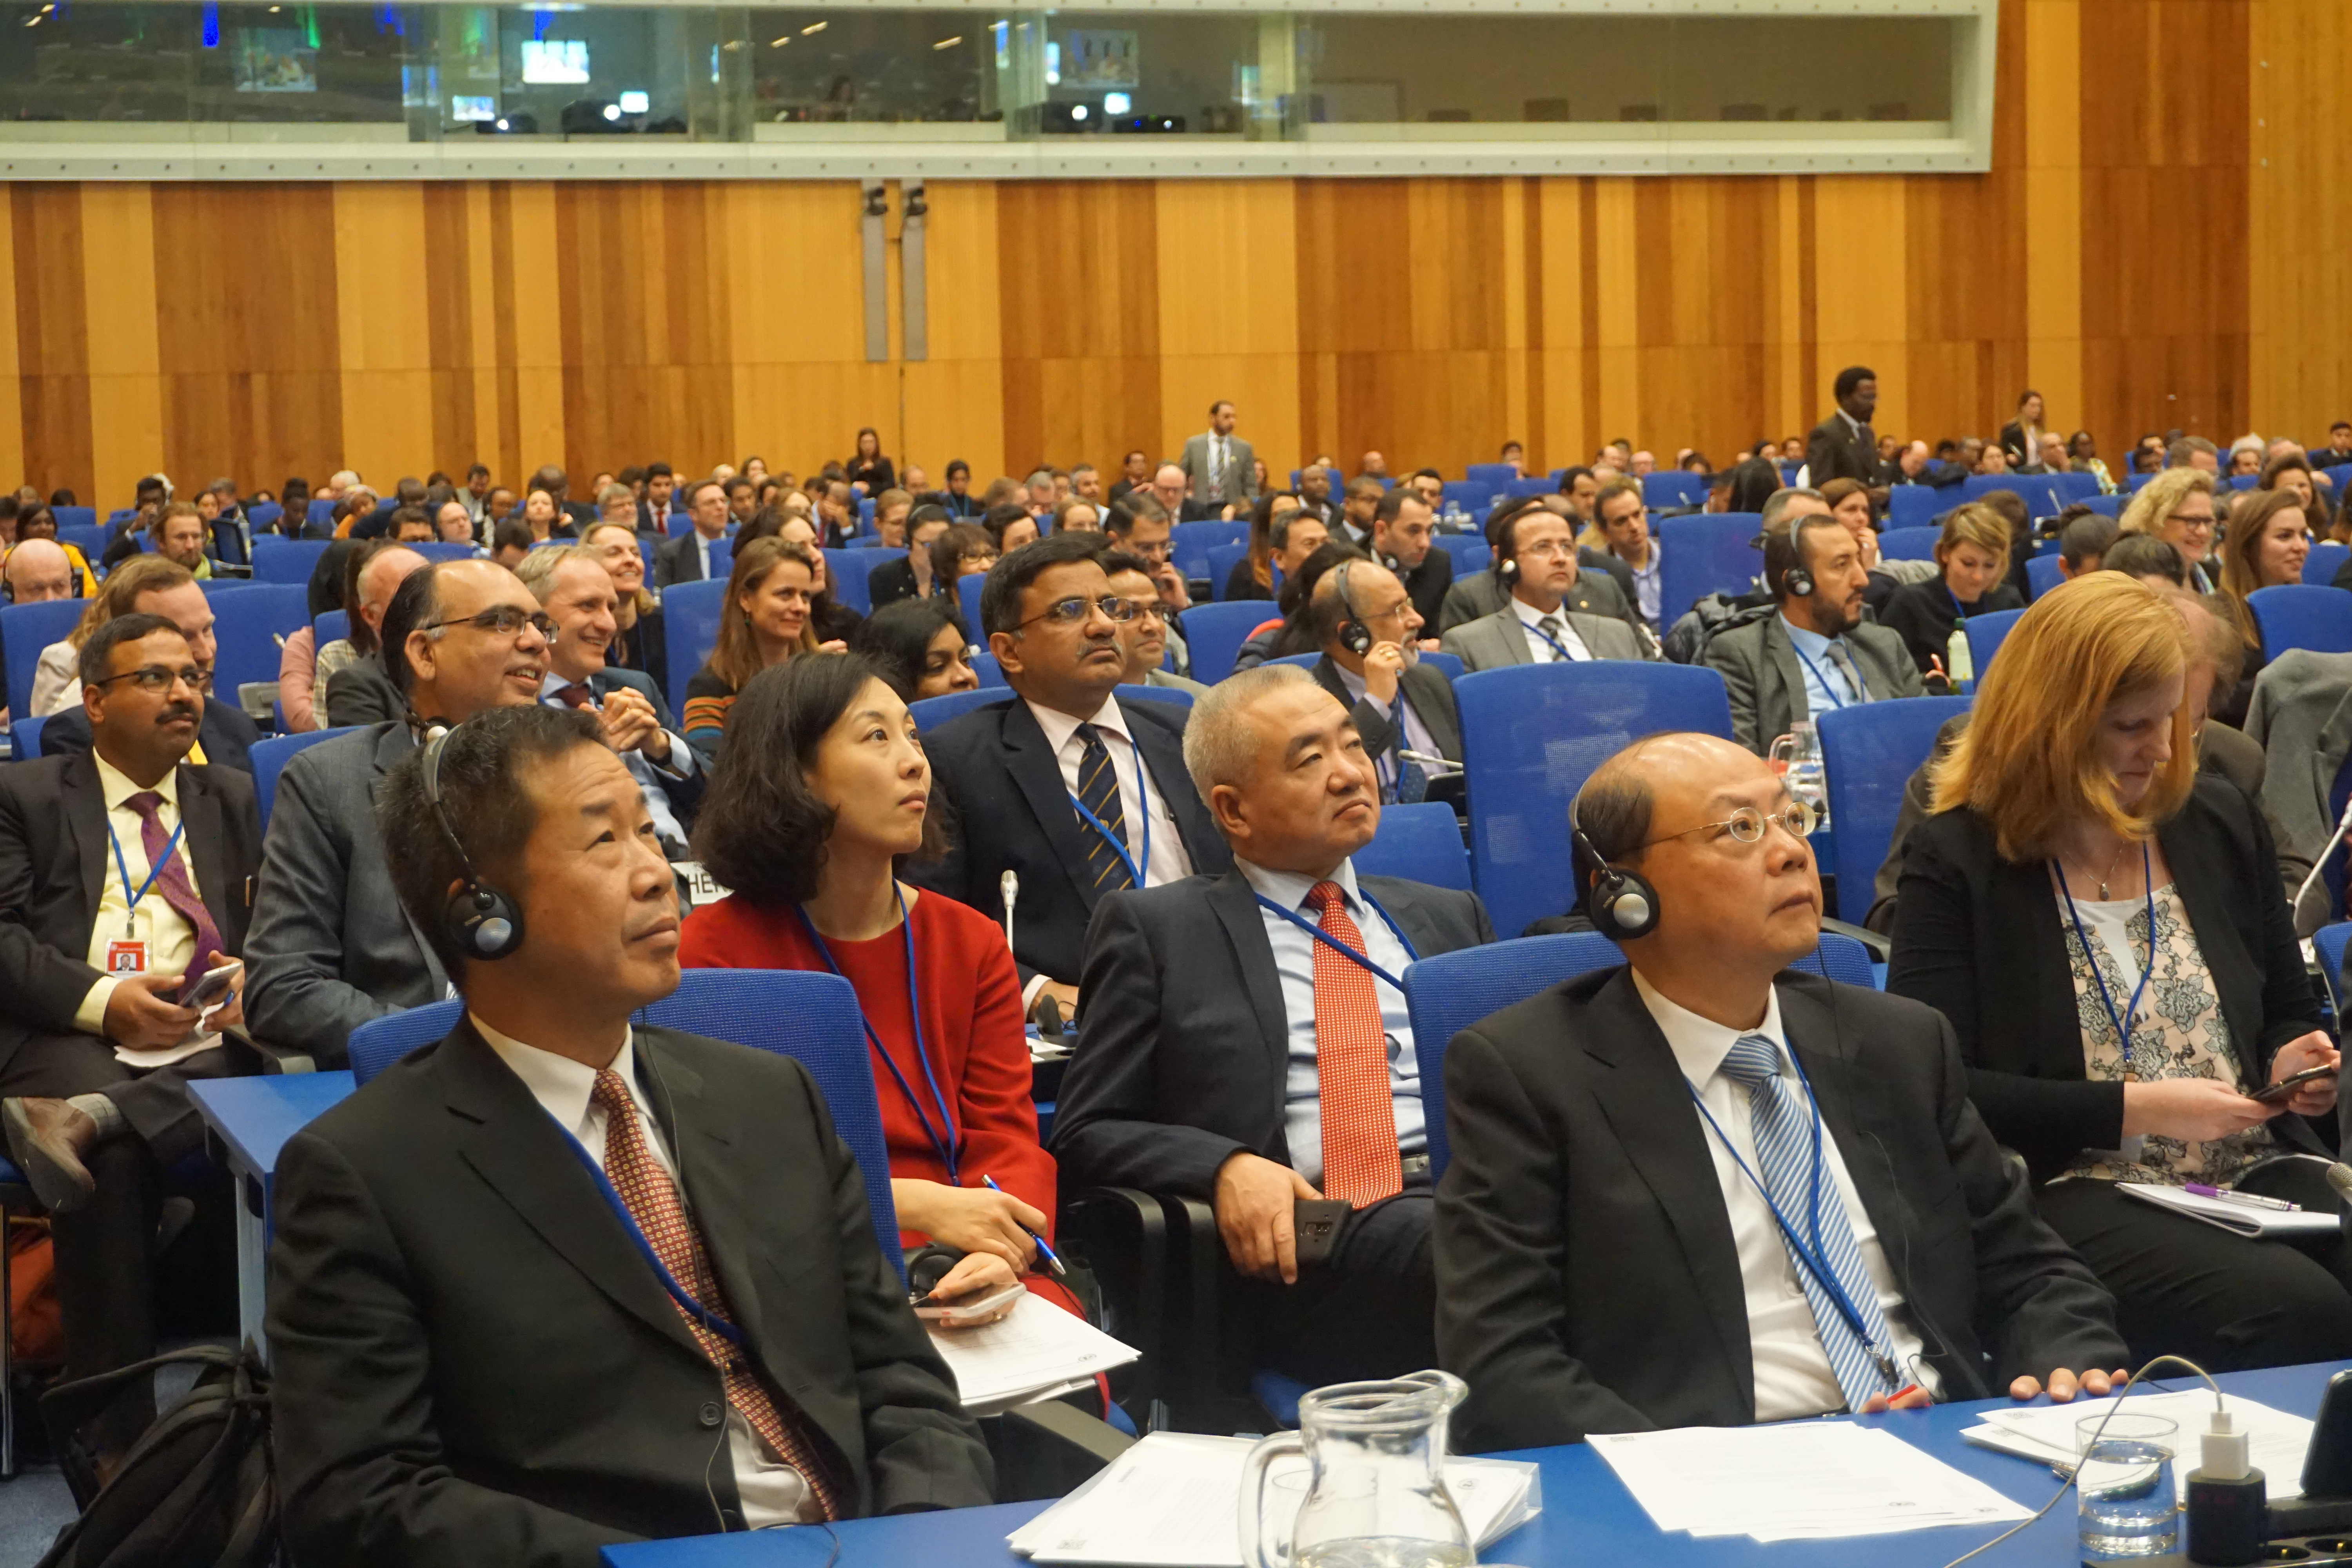 Des participants en tenue formelle, assis dans une grande salle et écoutant très attentivement les orateurs.